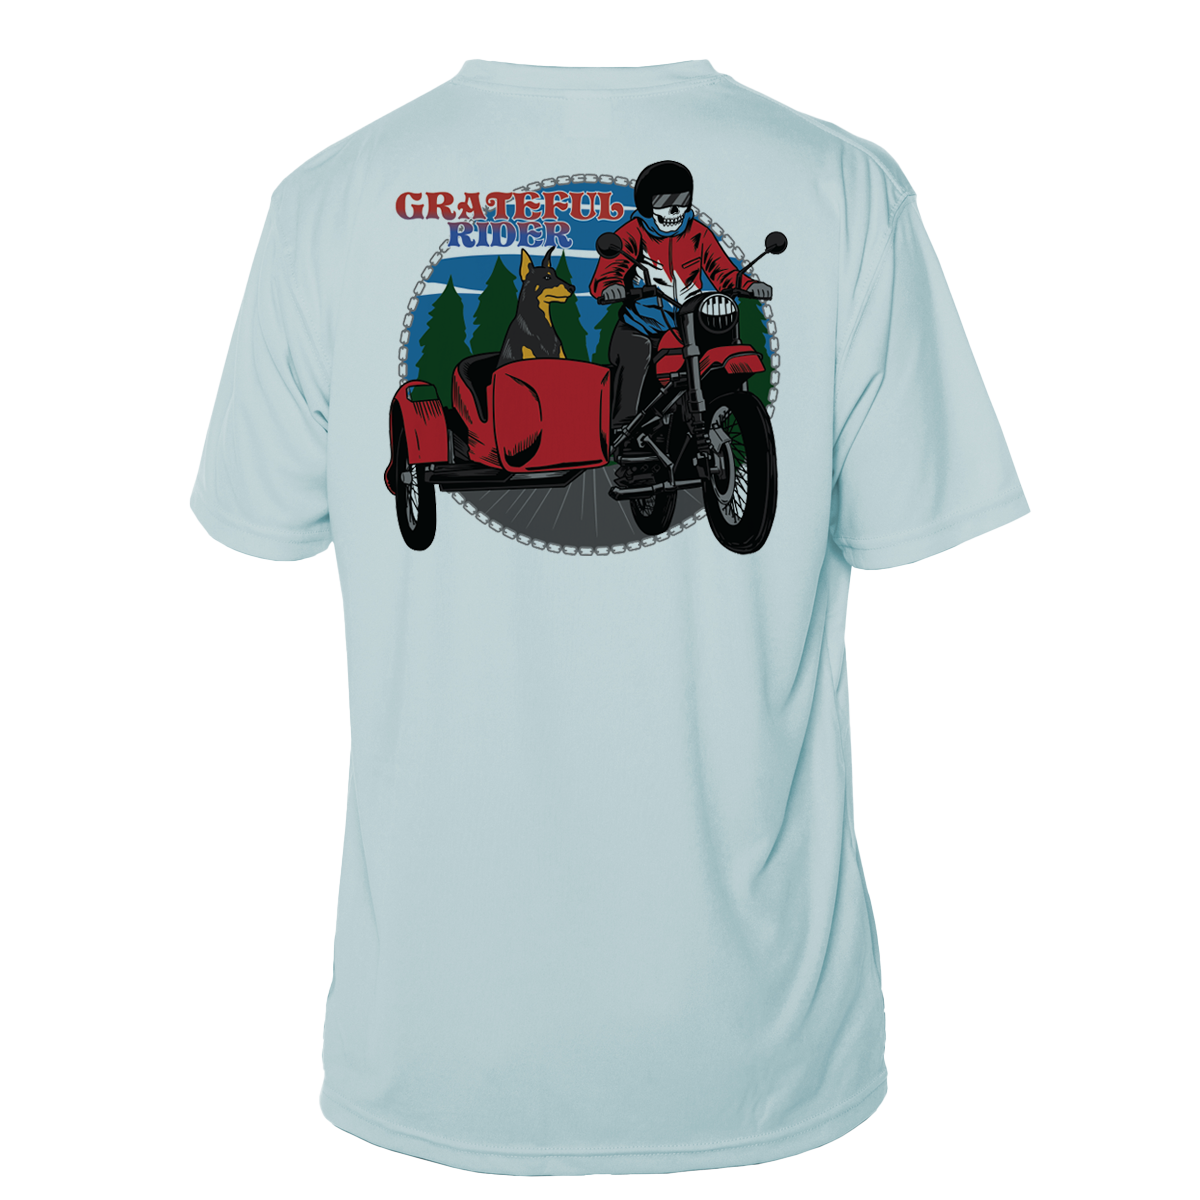 Grateful Rider Road Warrior Short Sleeve UV Shirt